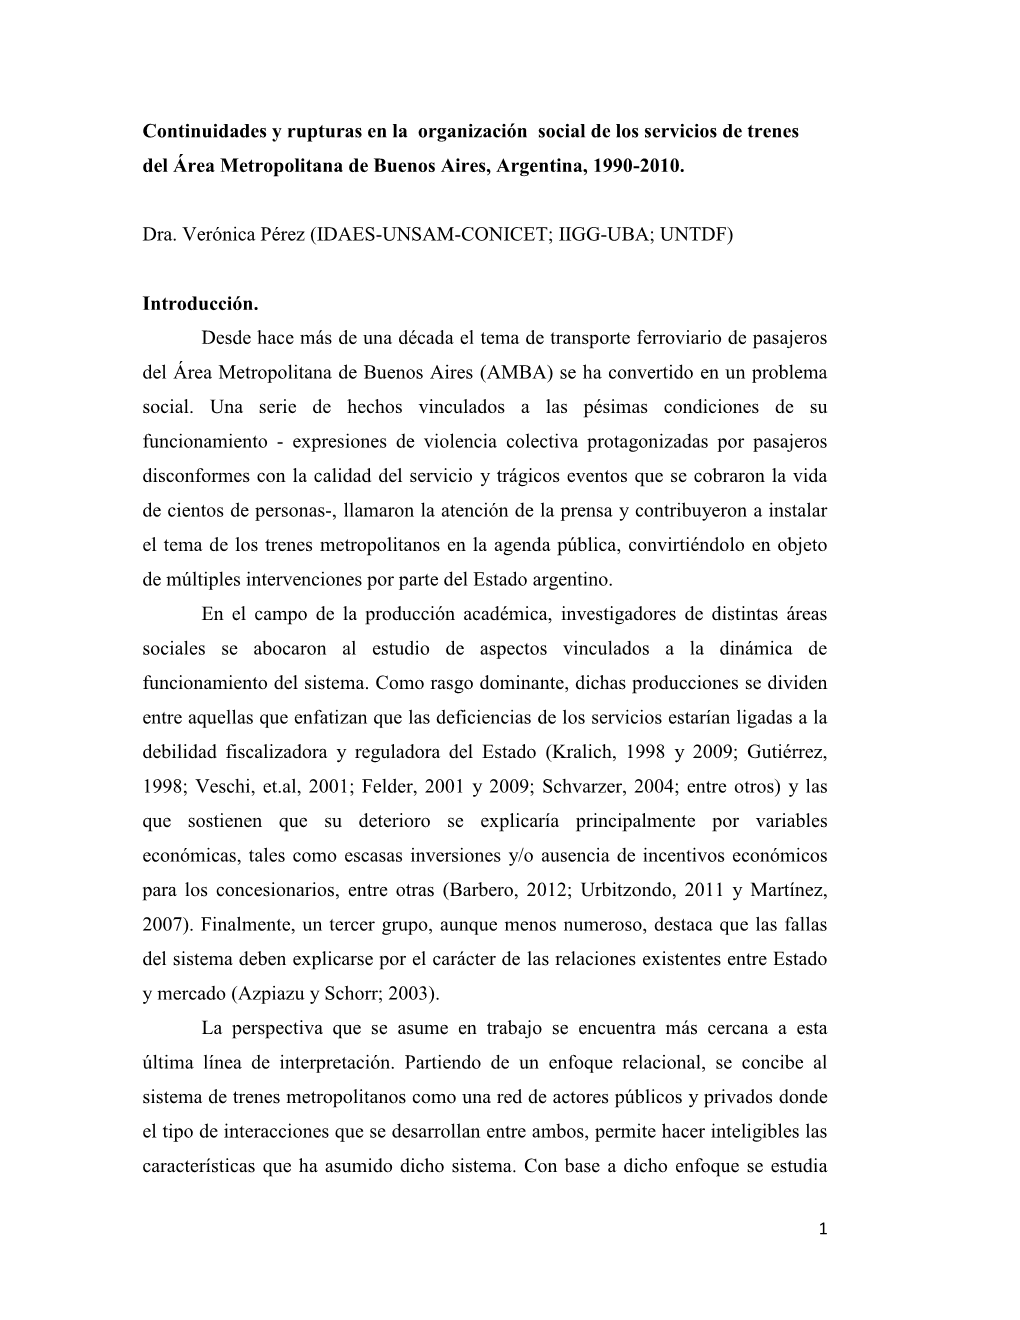 Continuidades Y Rupturas En La Organización Social De Los Servicios De Trenes Del Área Metropolitana De Buenos Aires, Argentina, 1990-2010